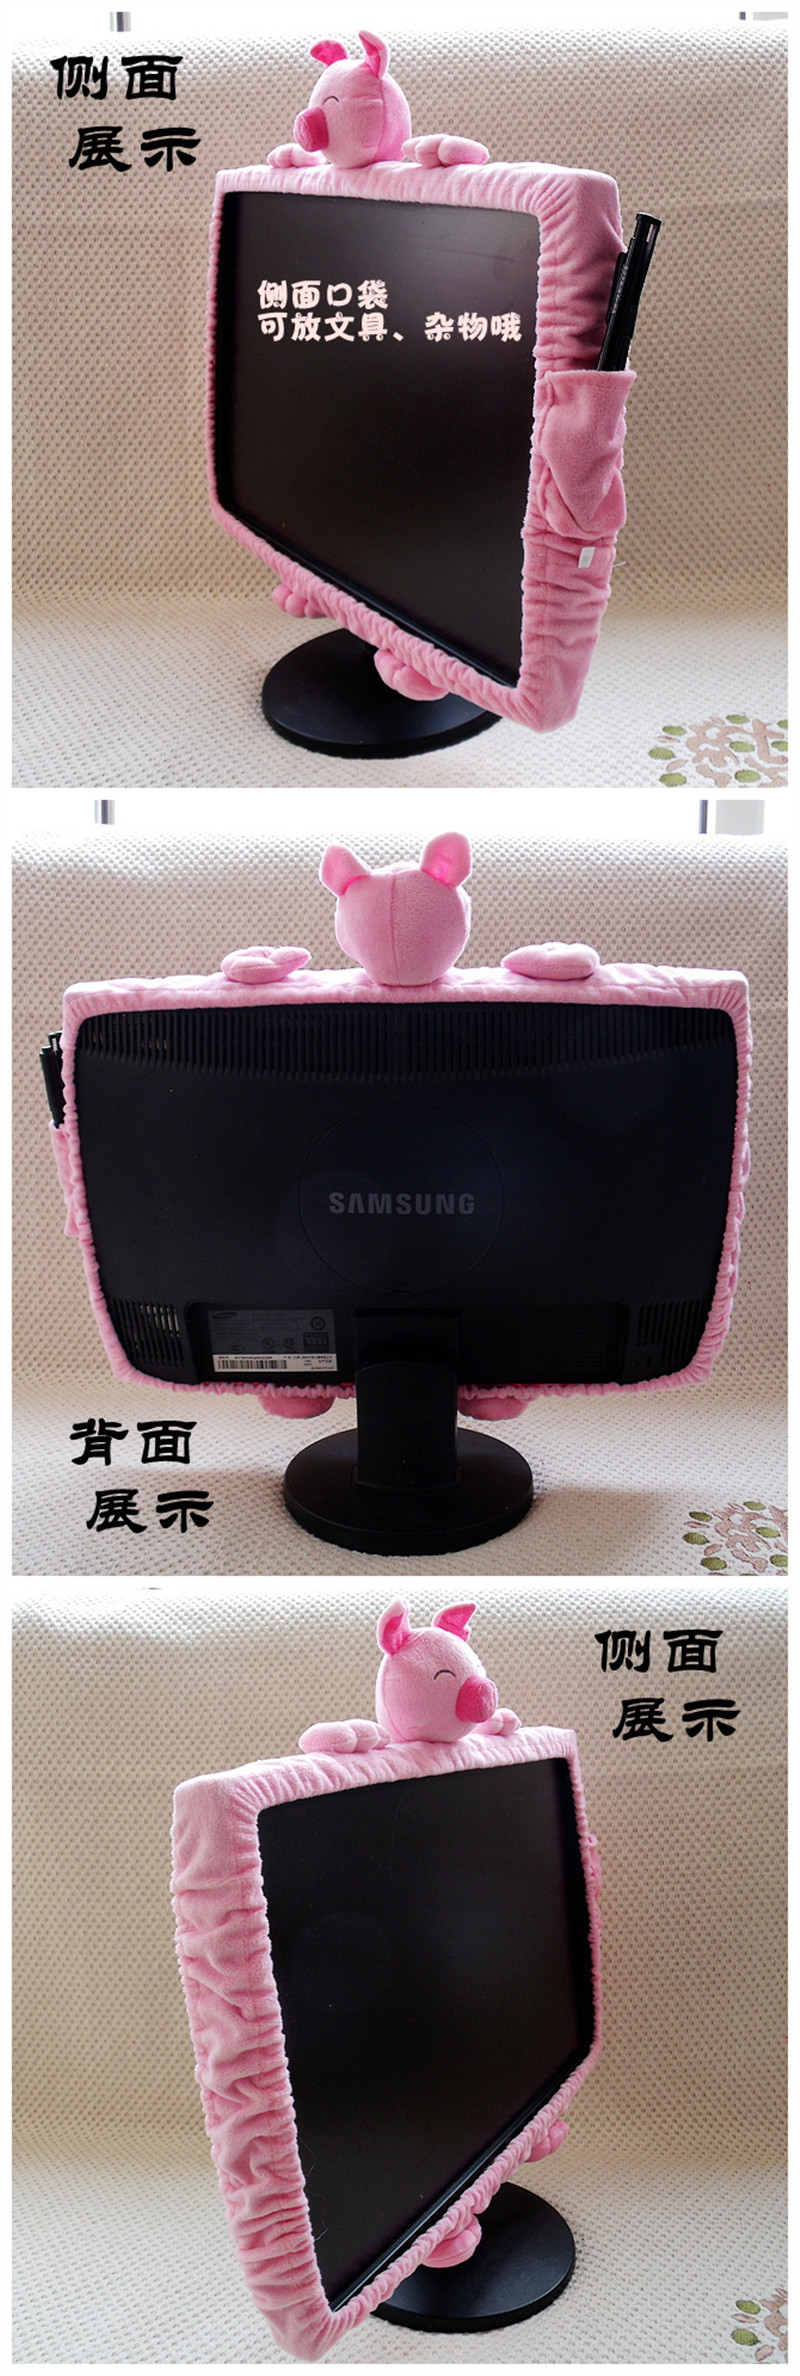 Phim hoạt hình dễ thương máy tính để bàn máy tính bìa bảo vệ bìa LCD màn hình màn hình trang trí bụi che vải sang trọng